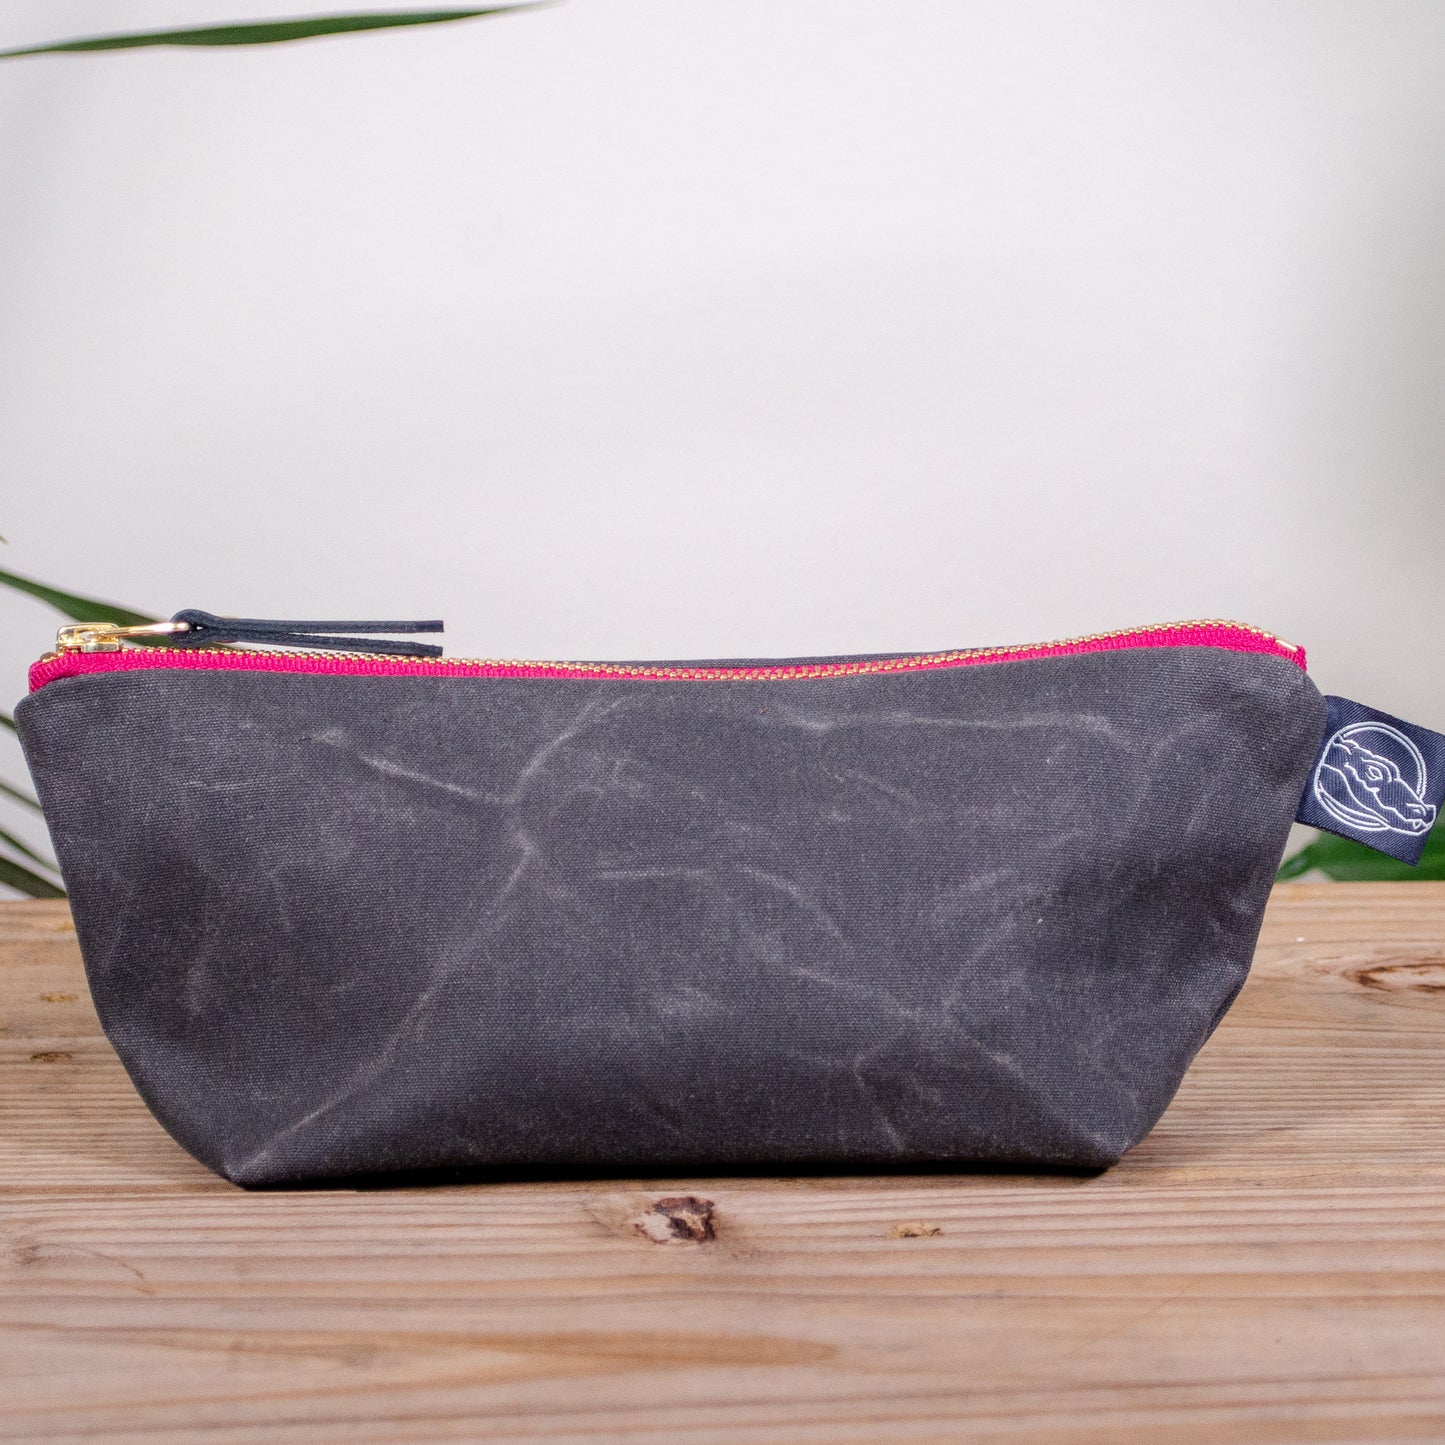 Charcoal Grey Bag No. 1 - The Essentials Bag